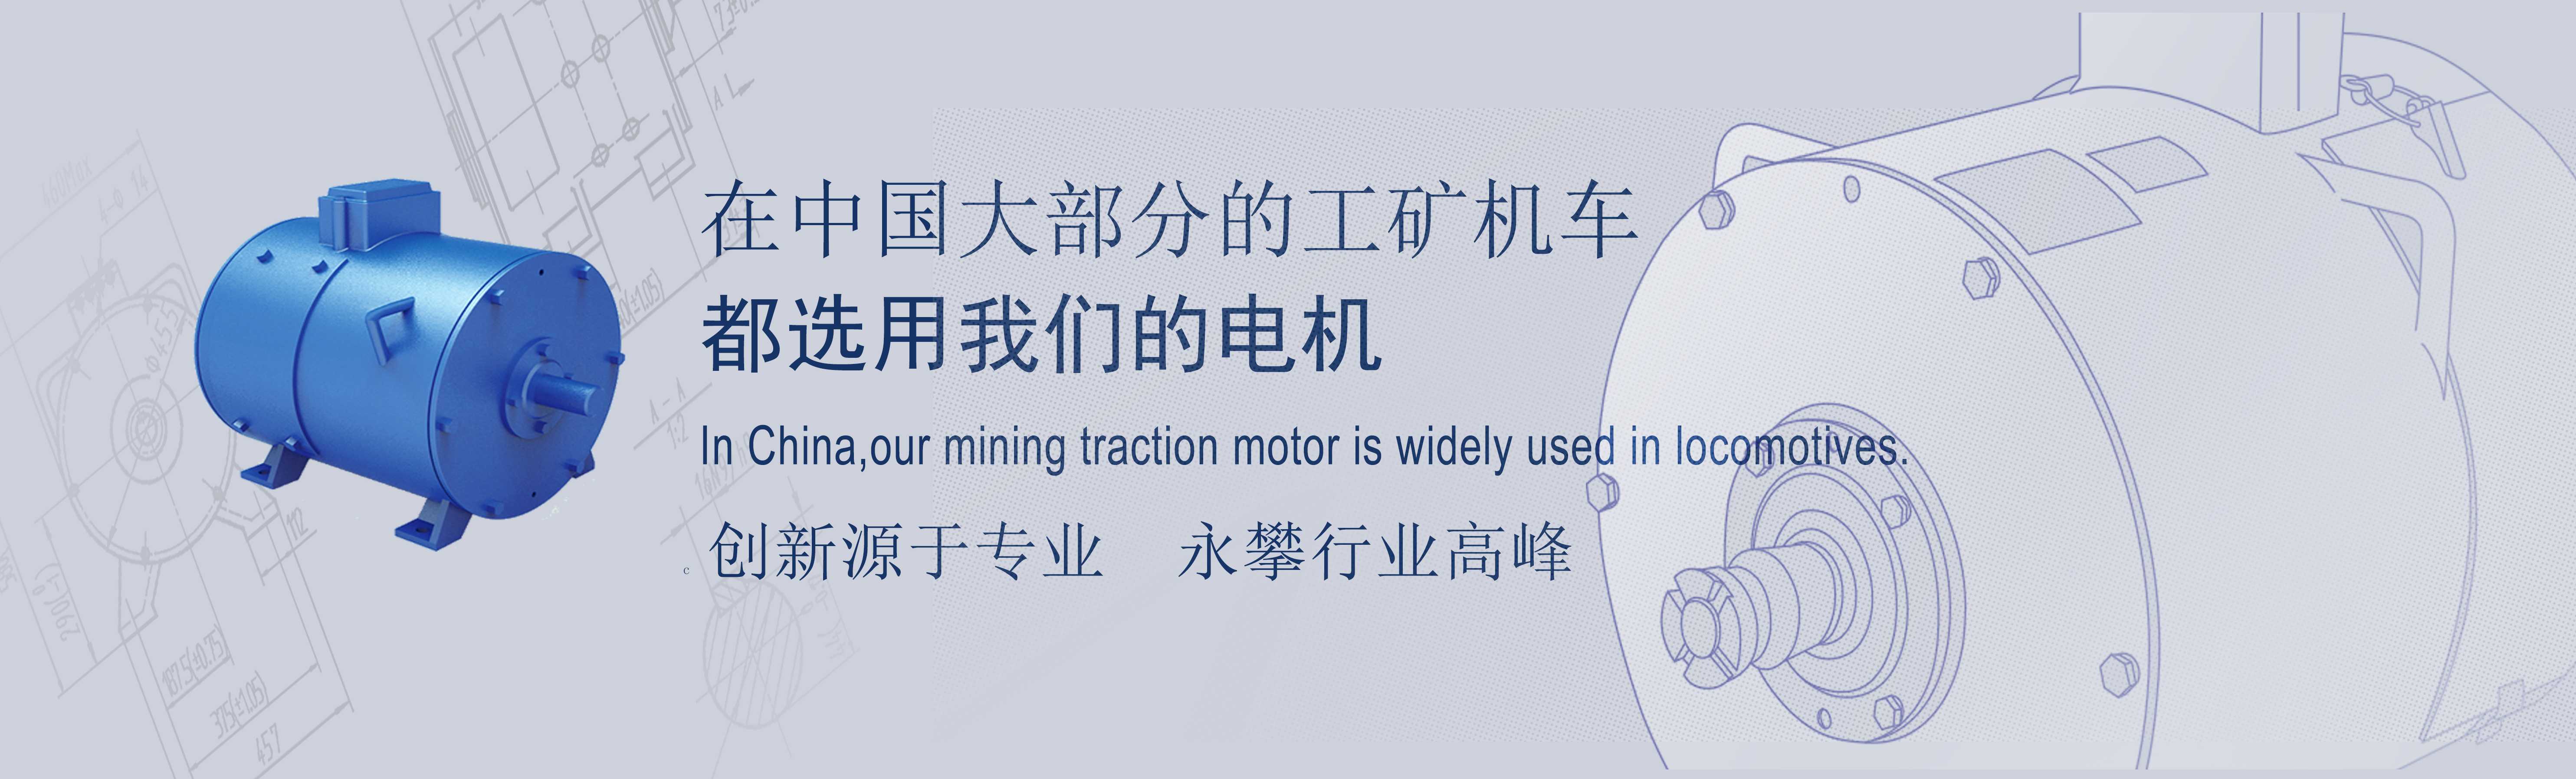 湖南宇通给客户提供锂电池及电机车培训